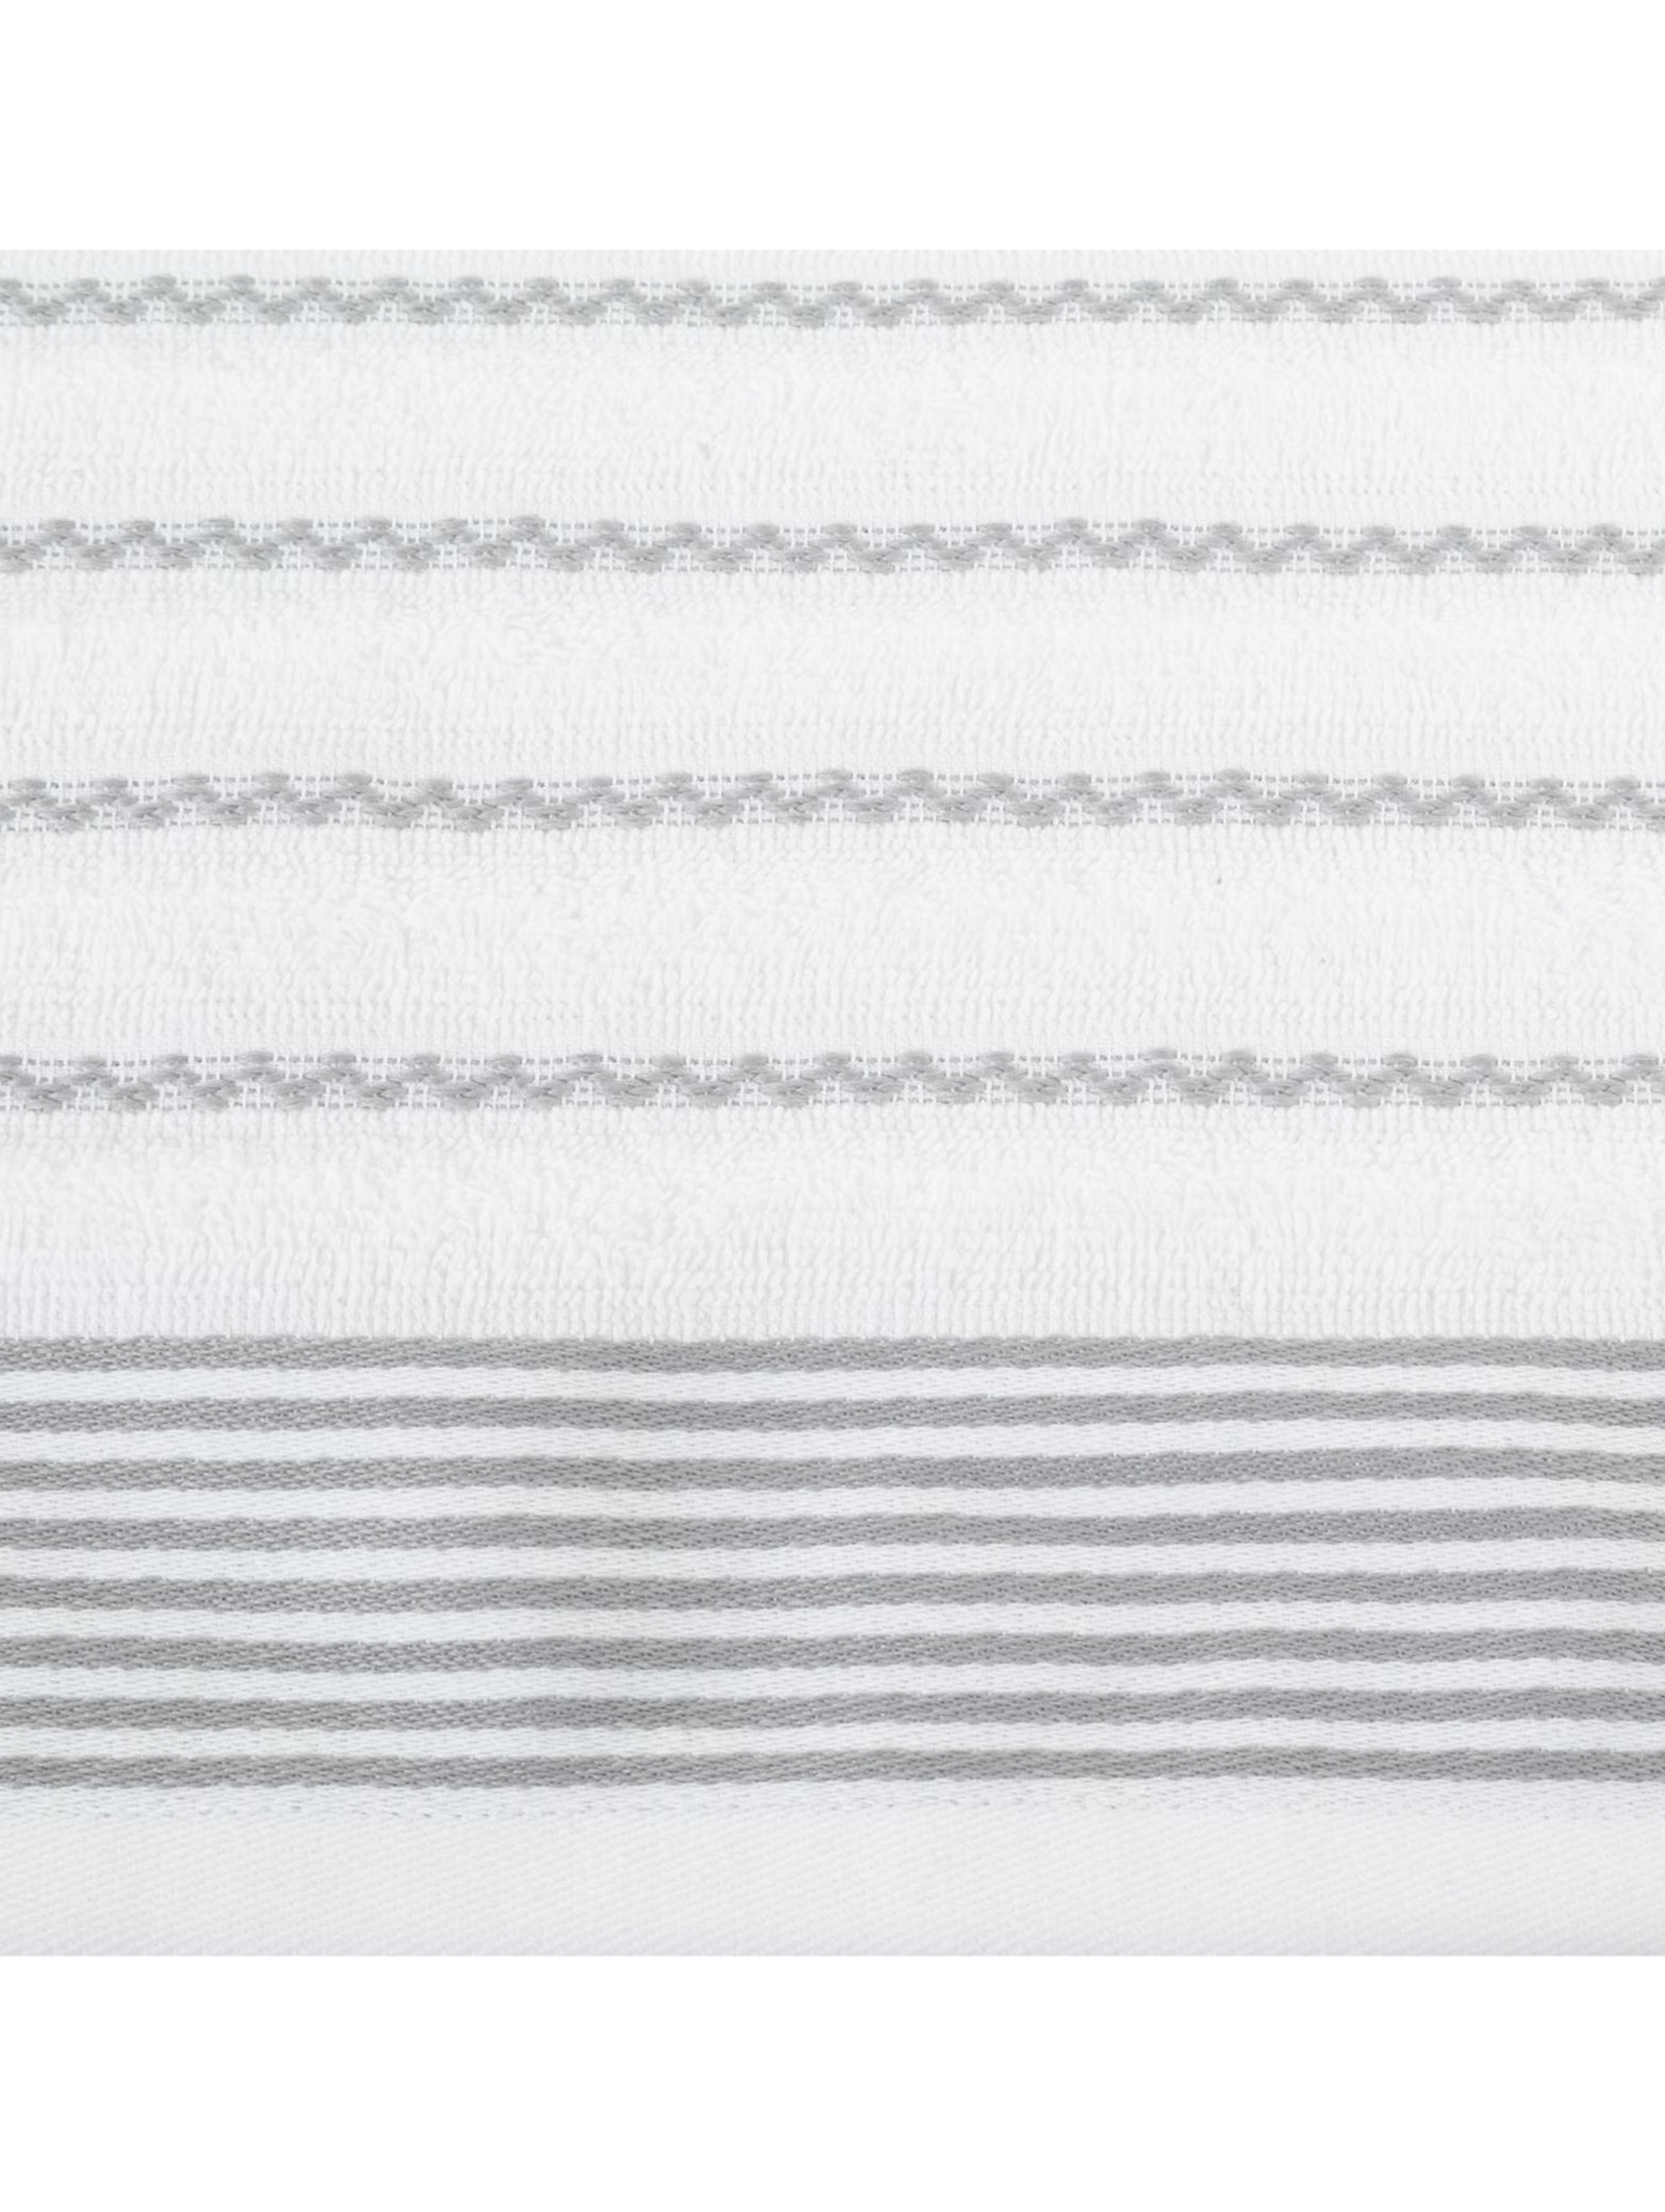 Ręcznik d91 leo (01) 70x140 cm biały